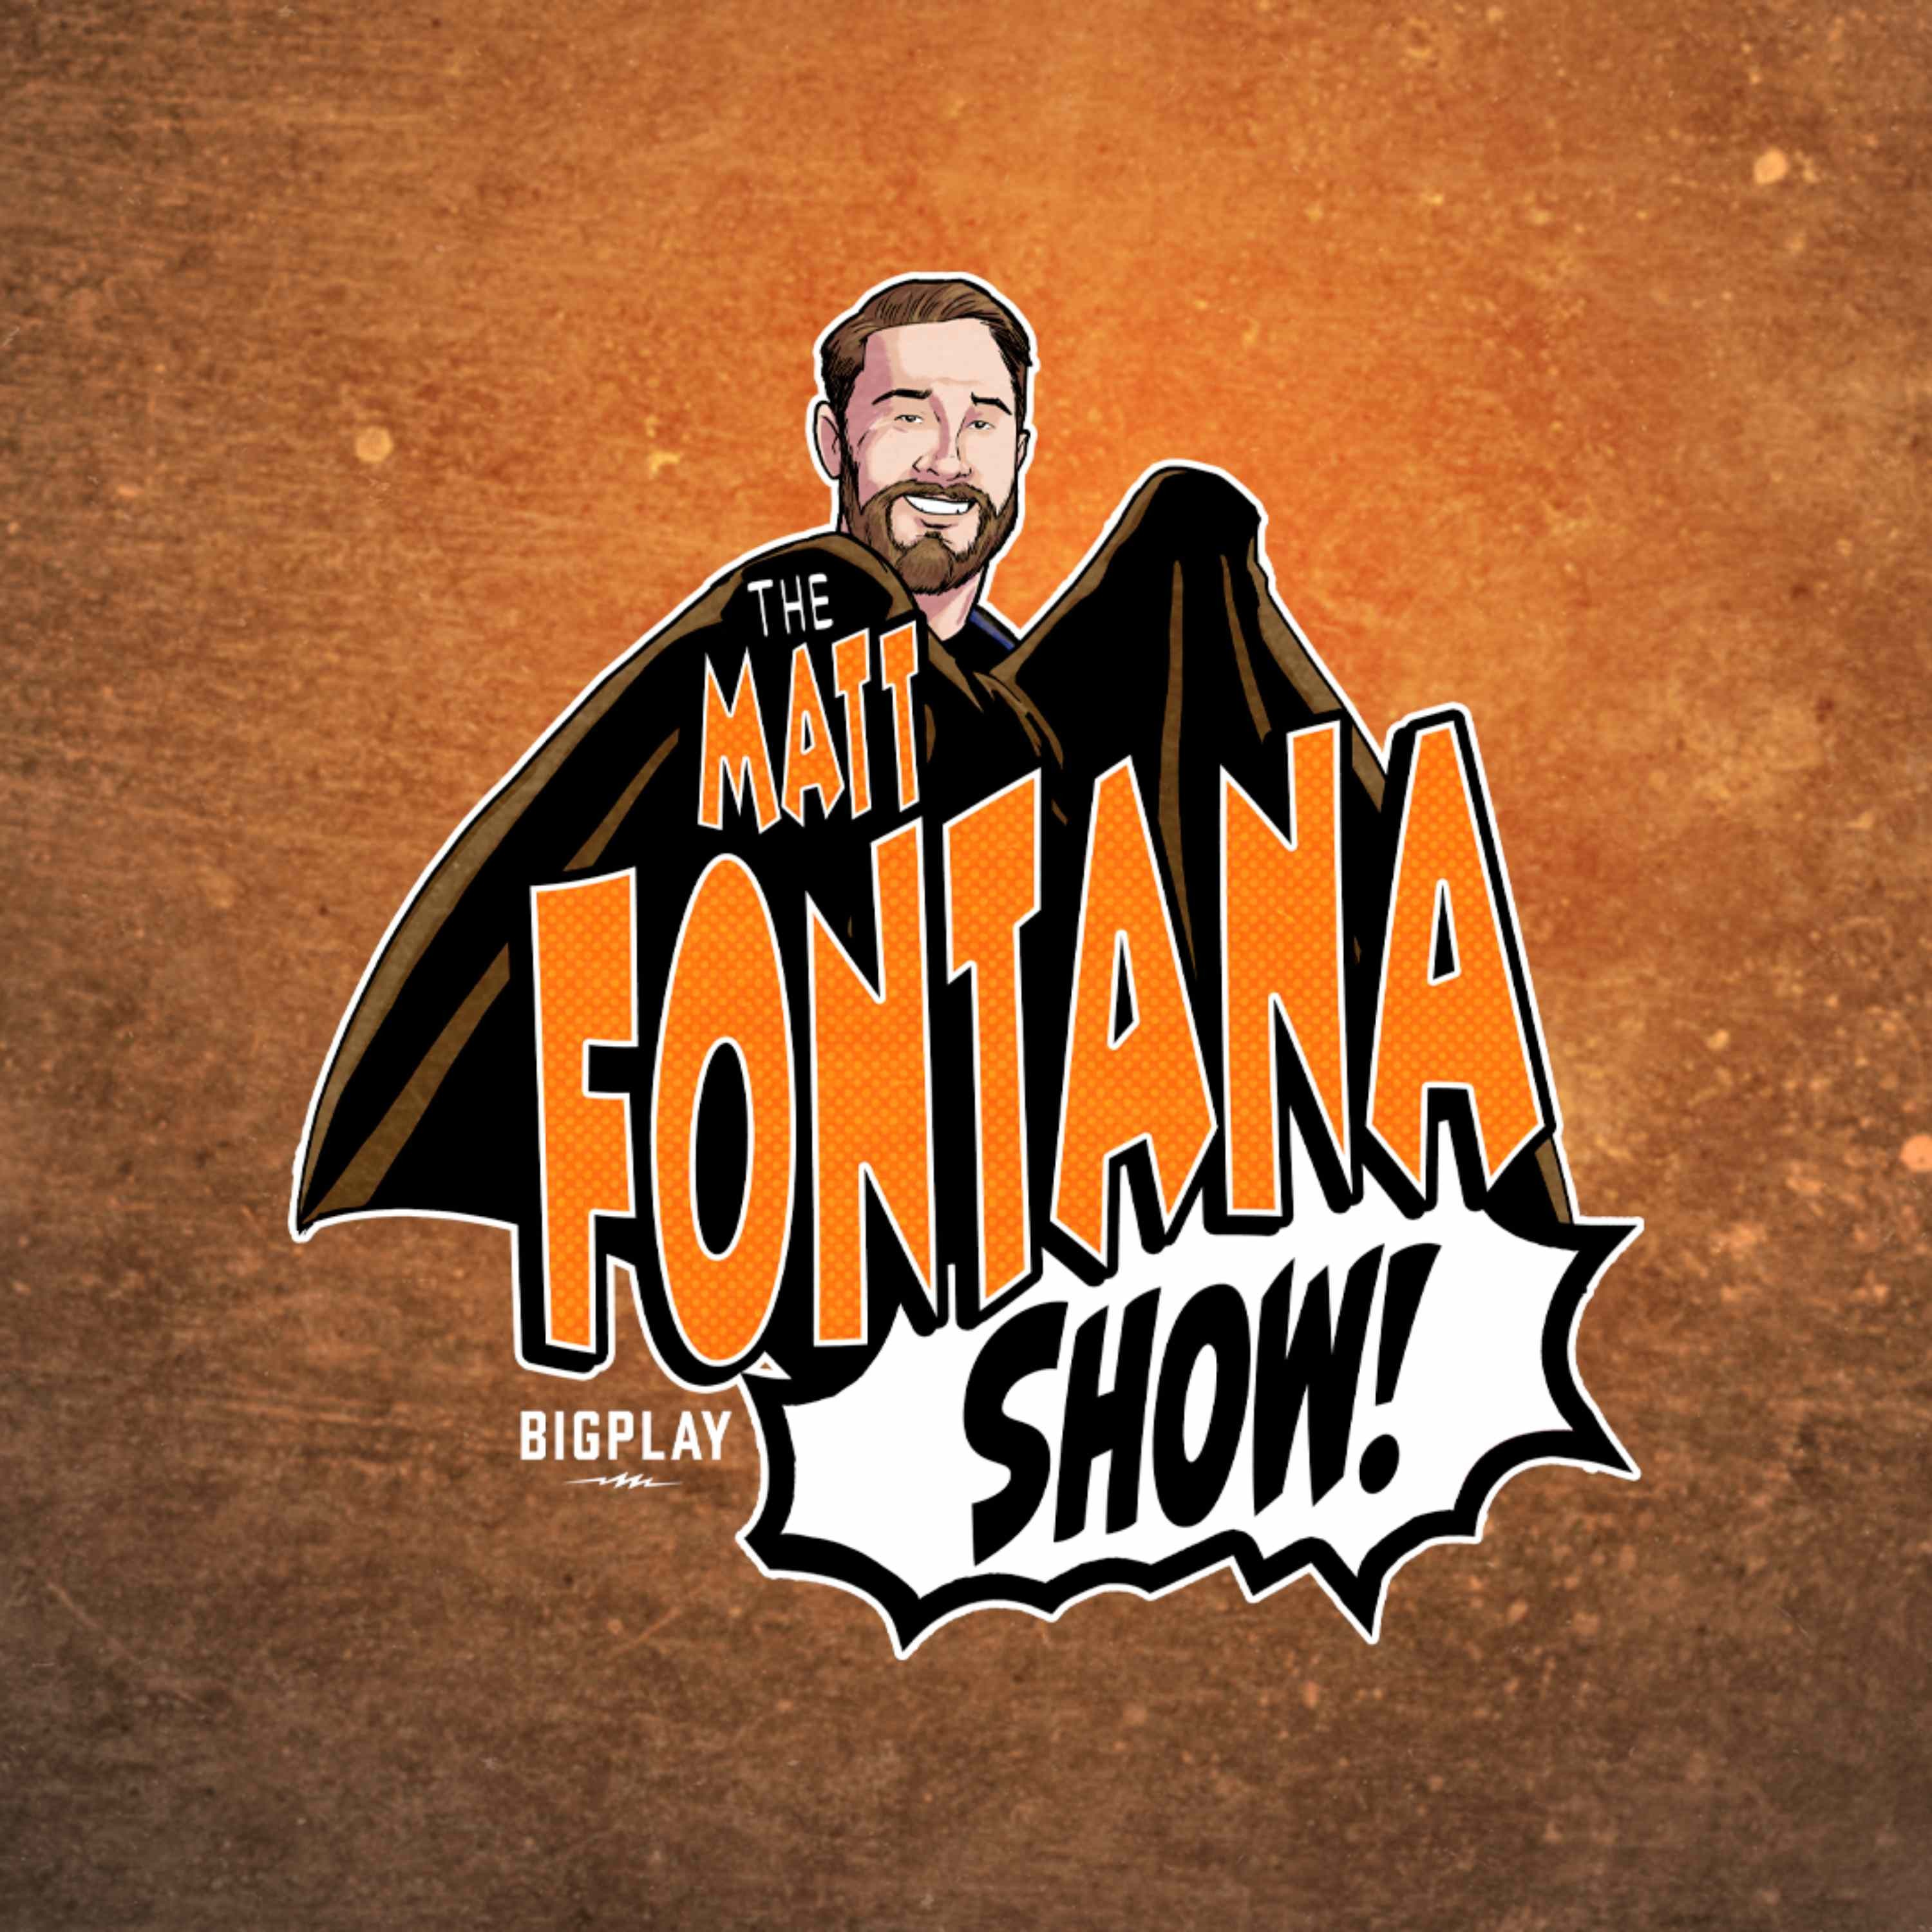 The Matt Fontana Show